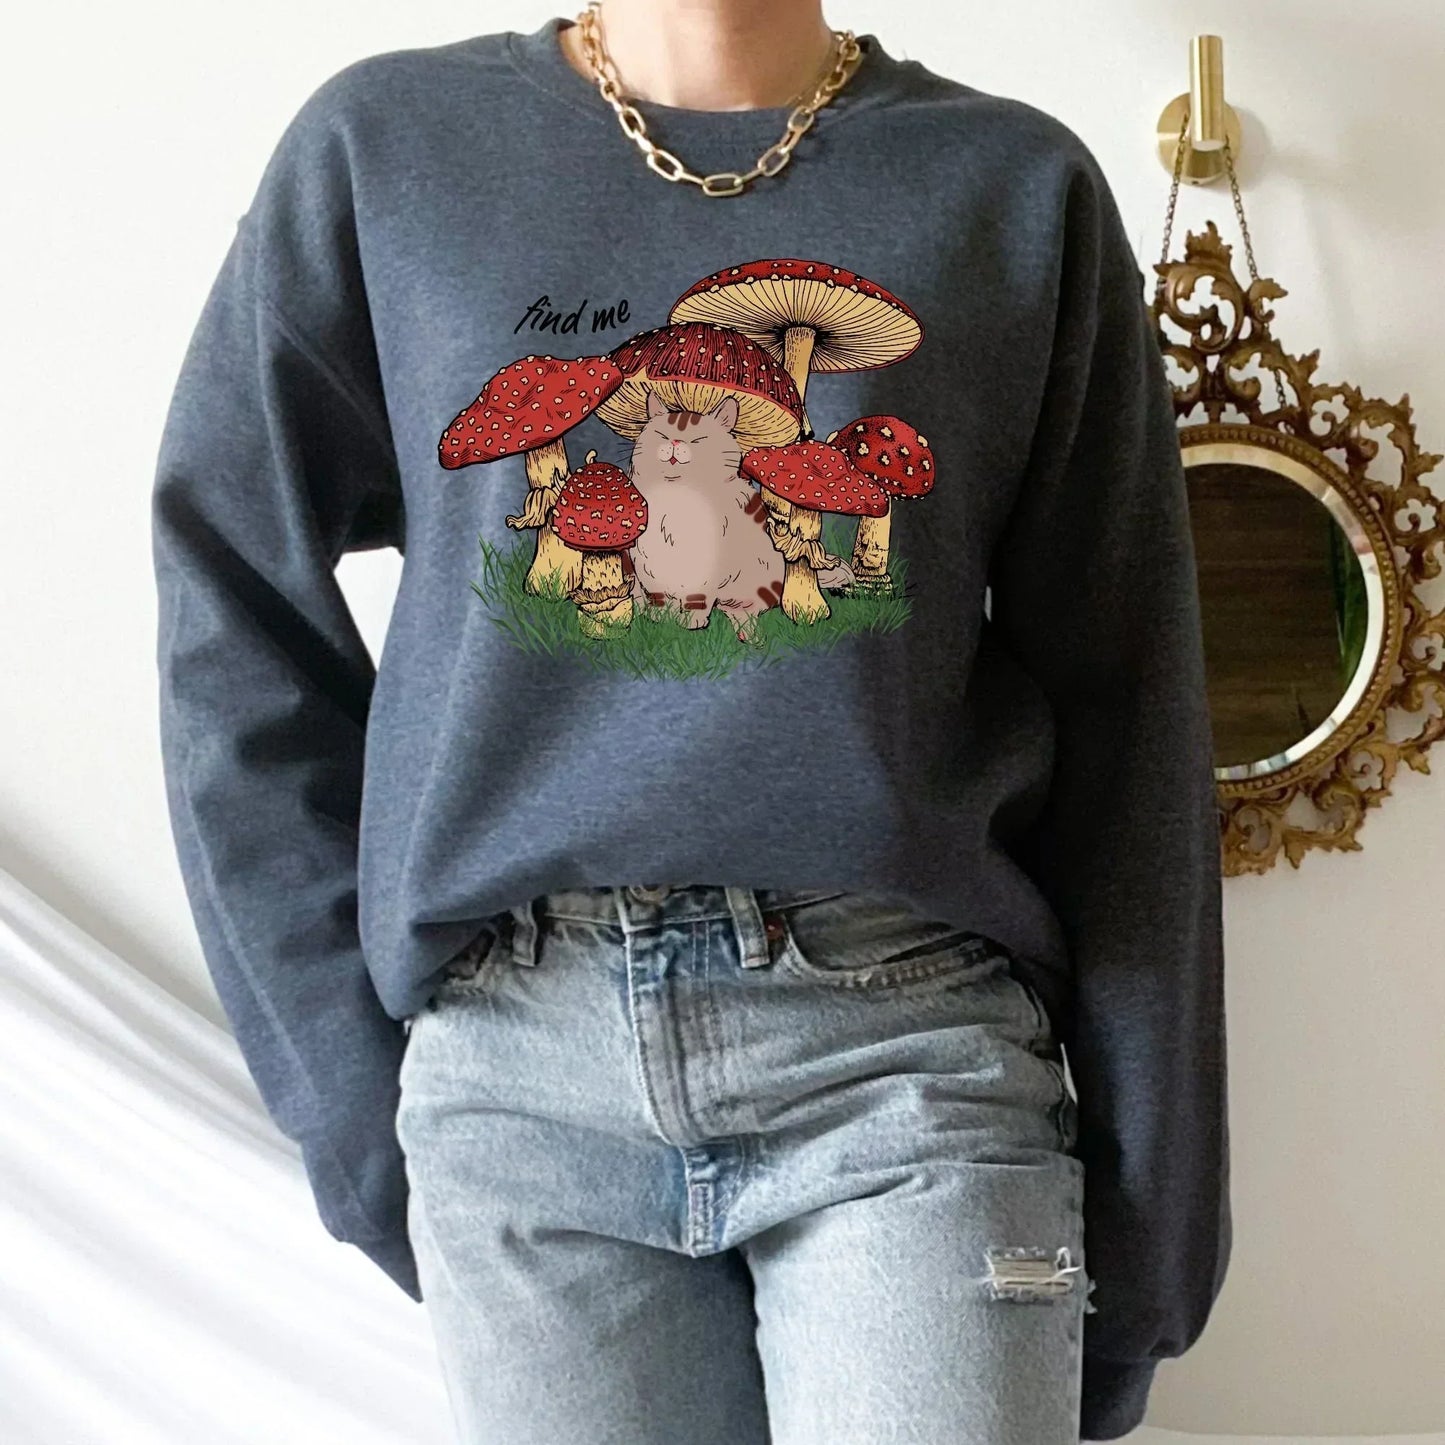 Magic Mushroom Shirt, Psilocybine Mushroom Sweater, Celestial Shirt, Dark Academia, Goblincore Clothing, Cat Sweatshirt, Moon Child Shirt HMDesignStudioUS